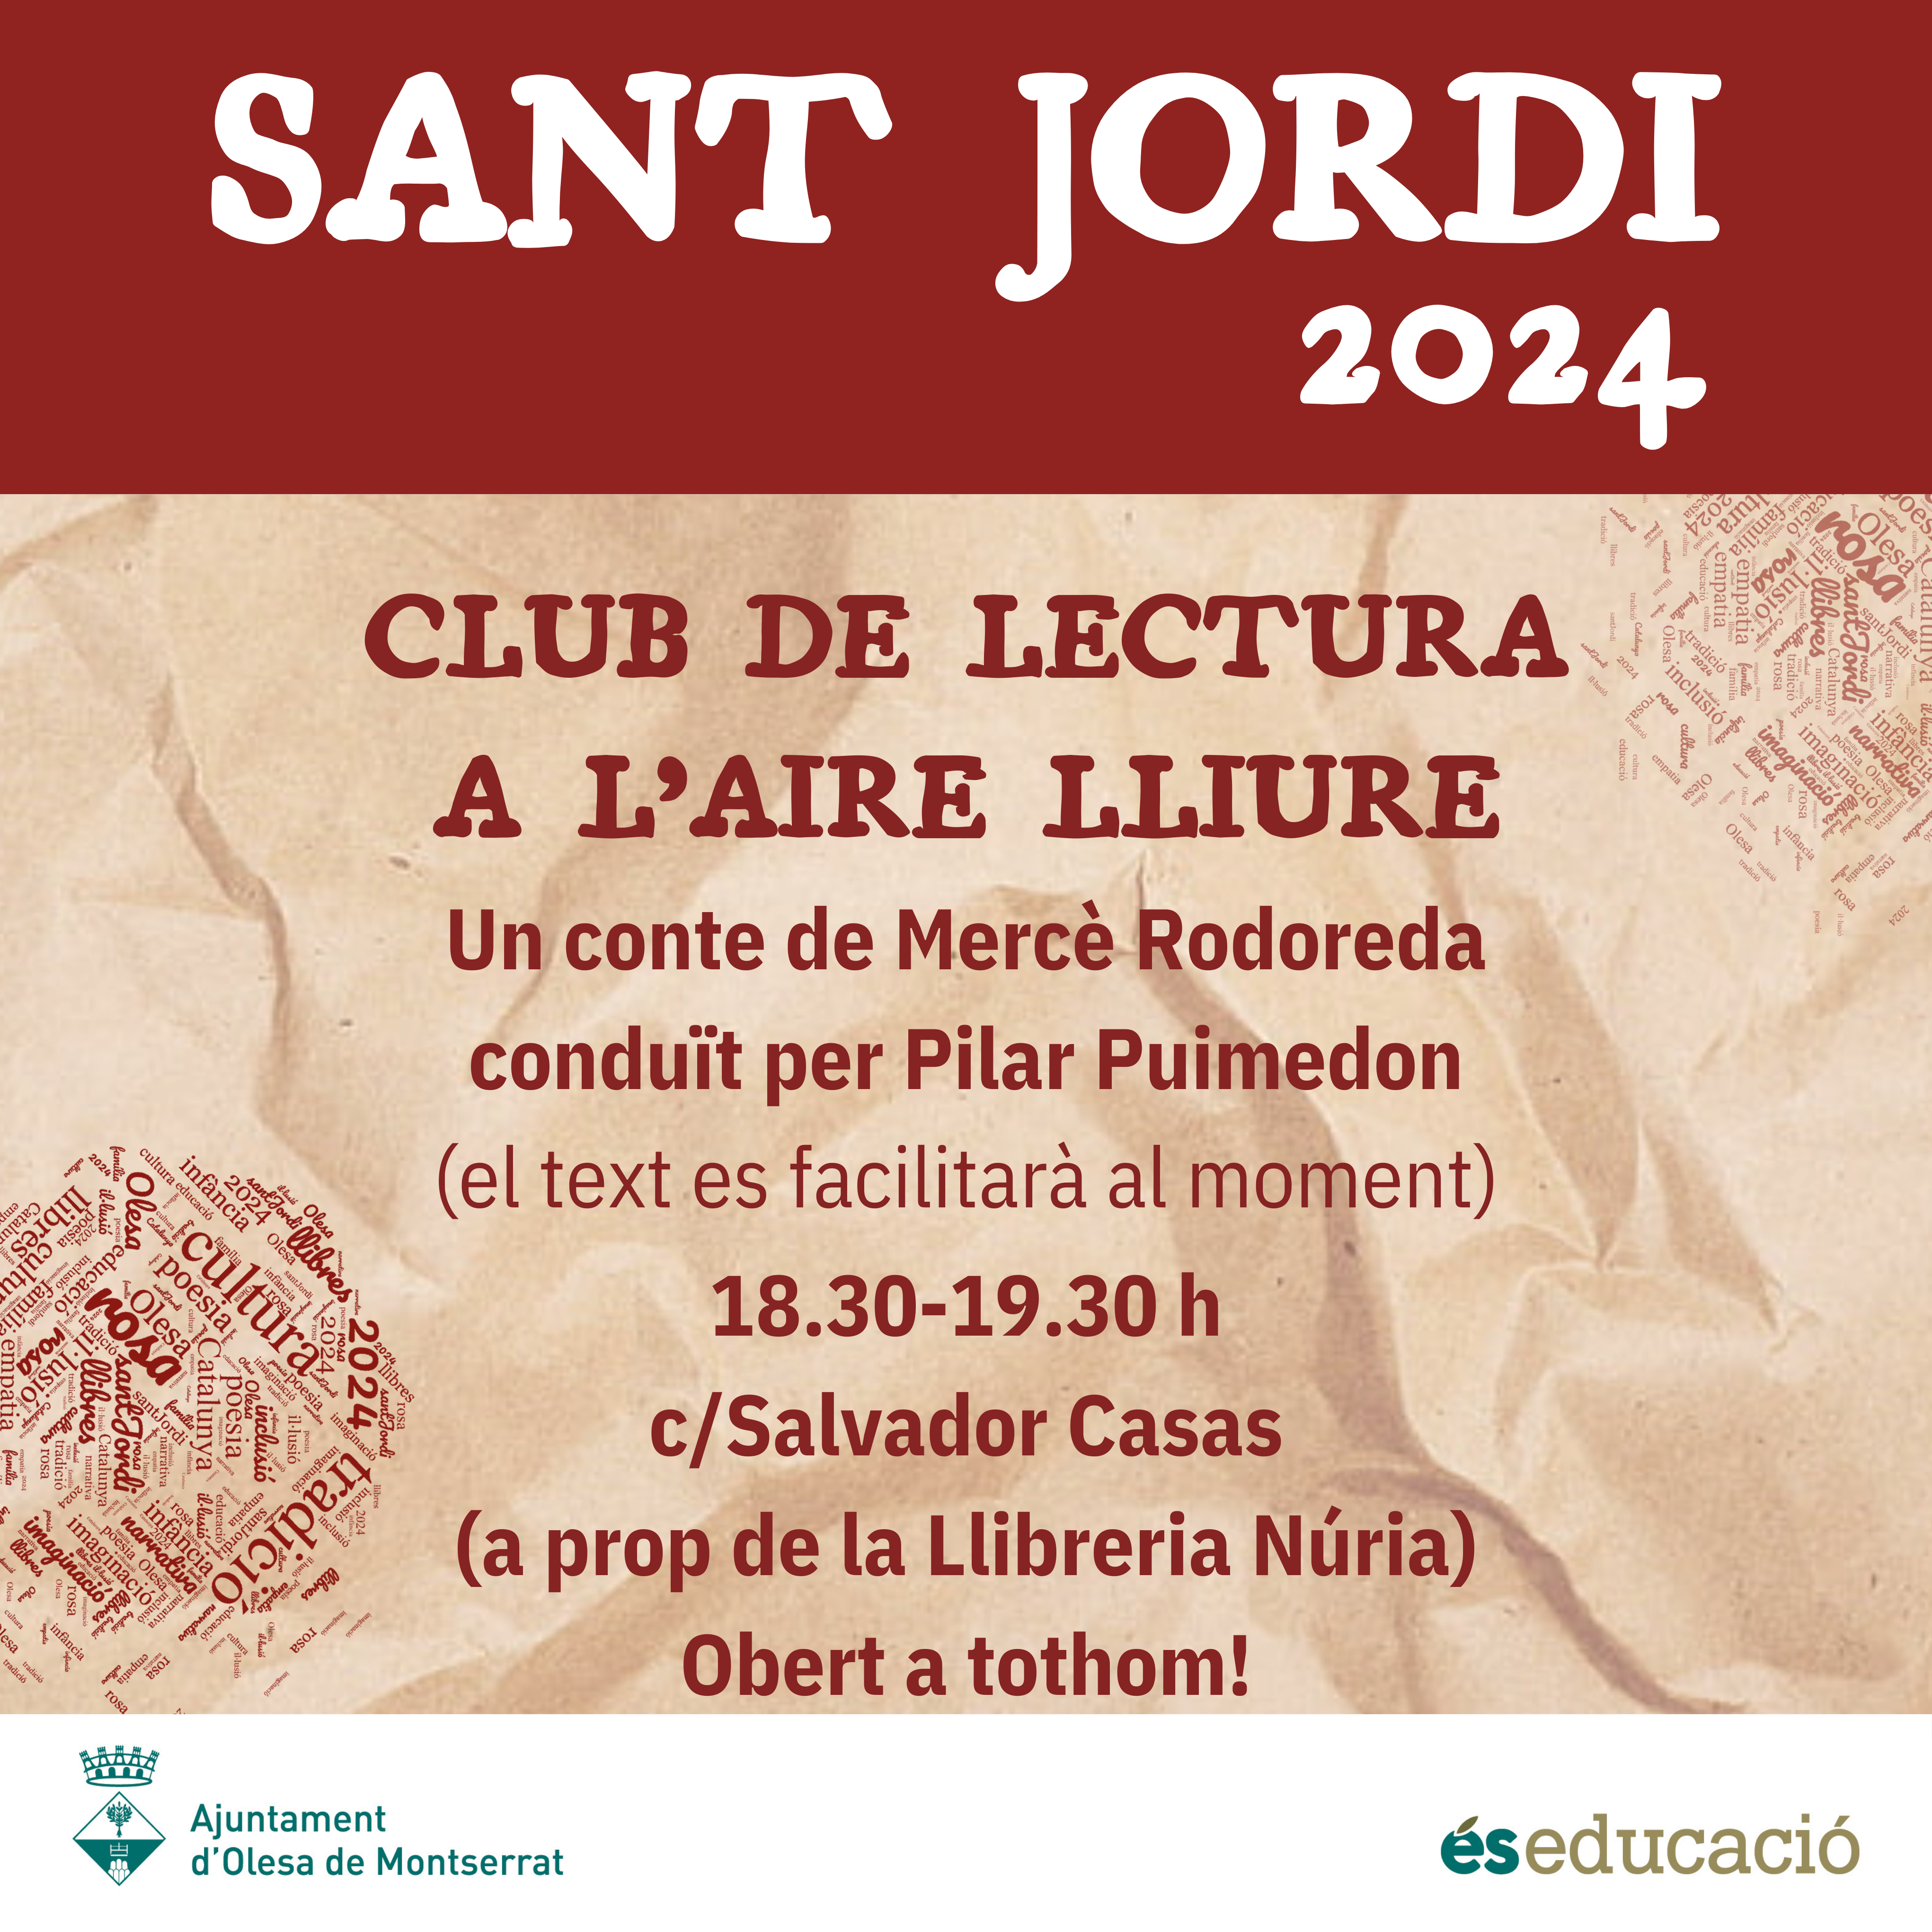 Cartell del club de lectura a l'aire lliure per Sant Jordi 2024